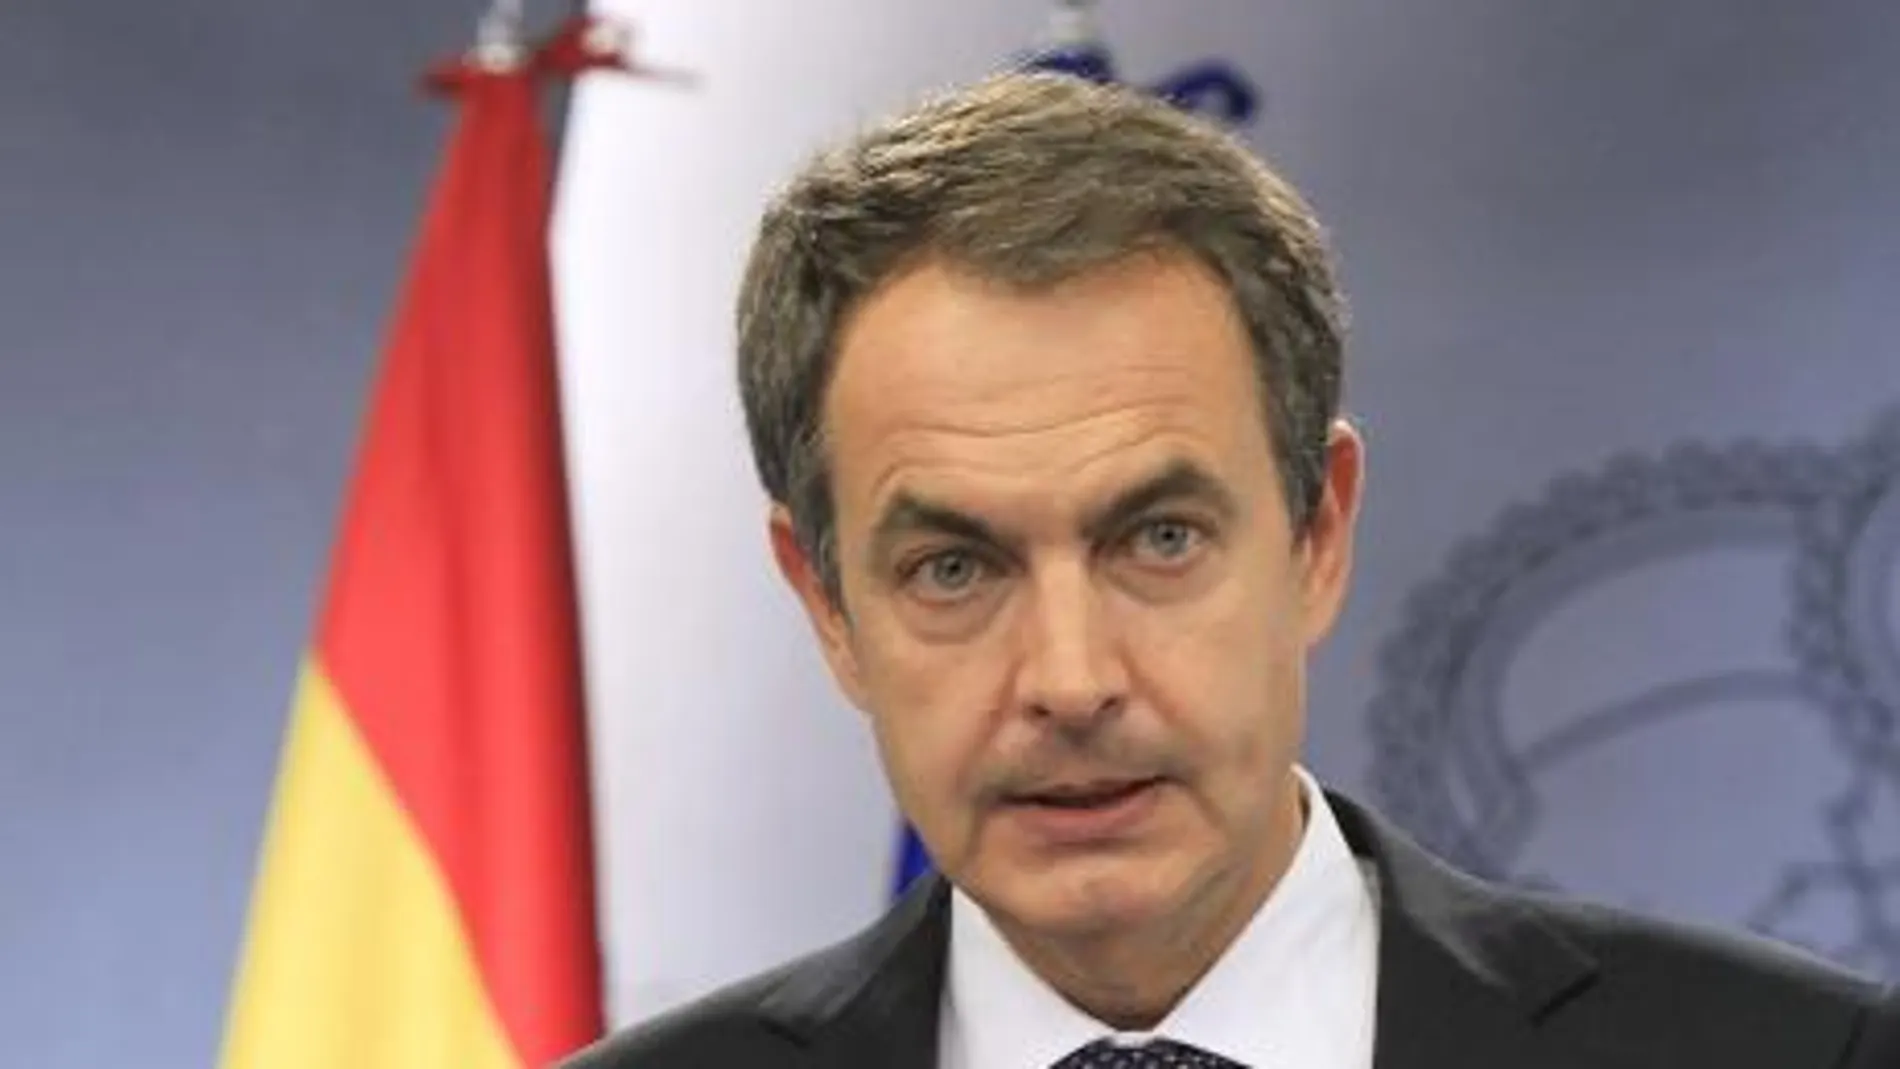 El jefe del Gobierno, José Luis Rodríguez Zapatero, leyó ayer una declaración institucional sobre el comunicado de ETA